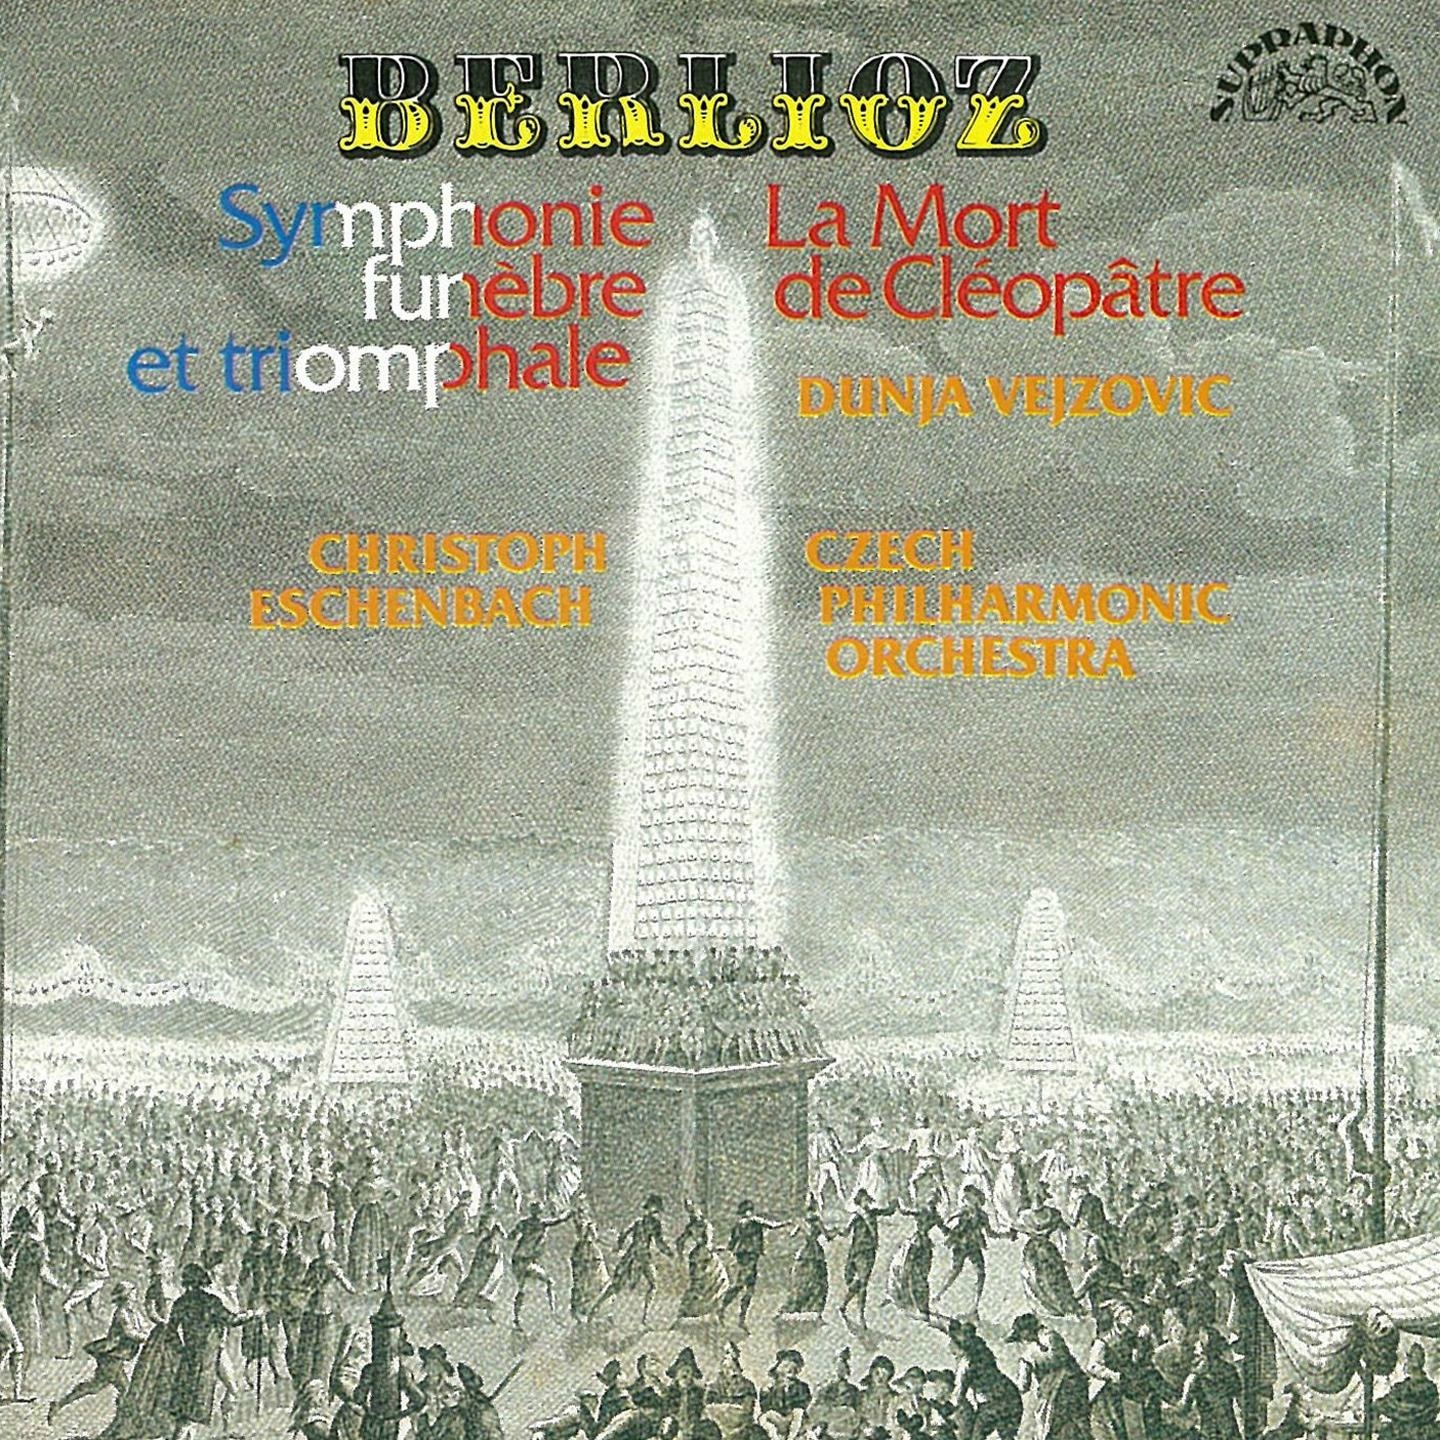 Berlioz: La mort de Cle op tre, Grande symphonie fune bre et triomphale